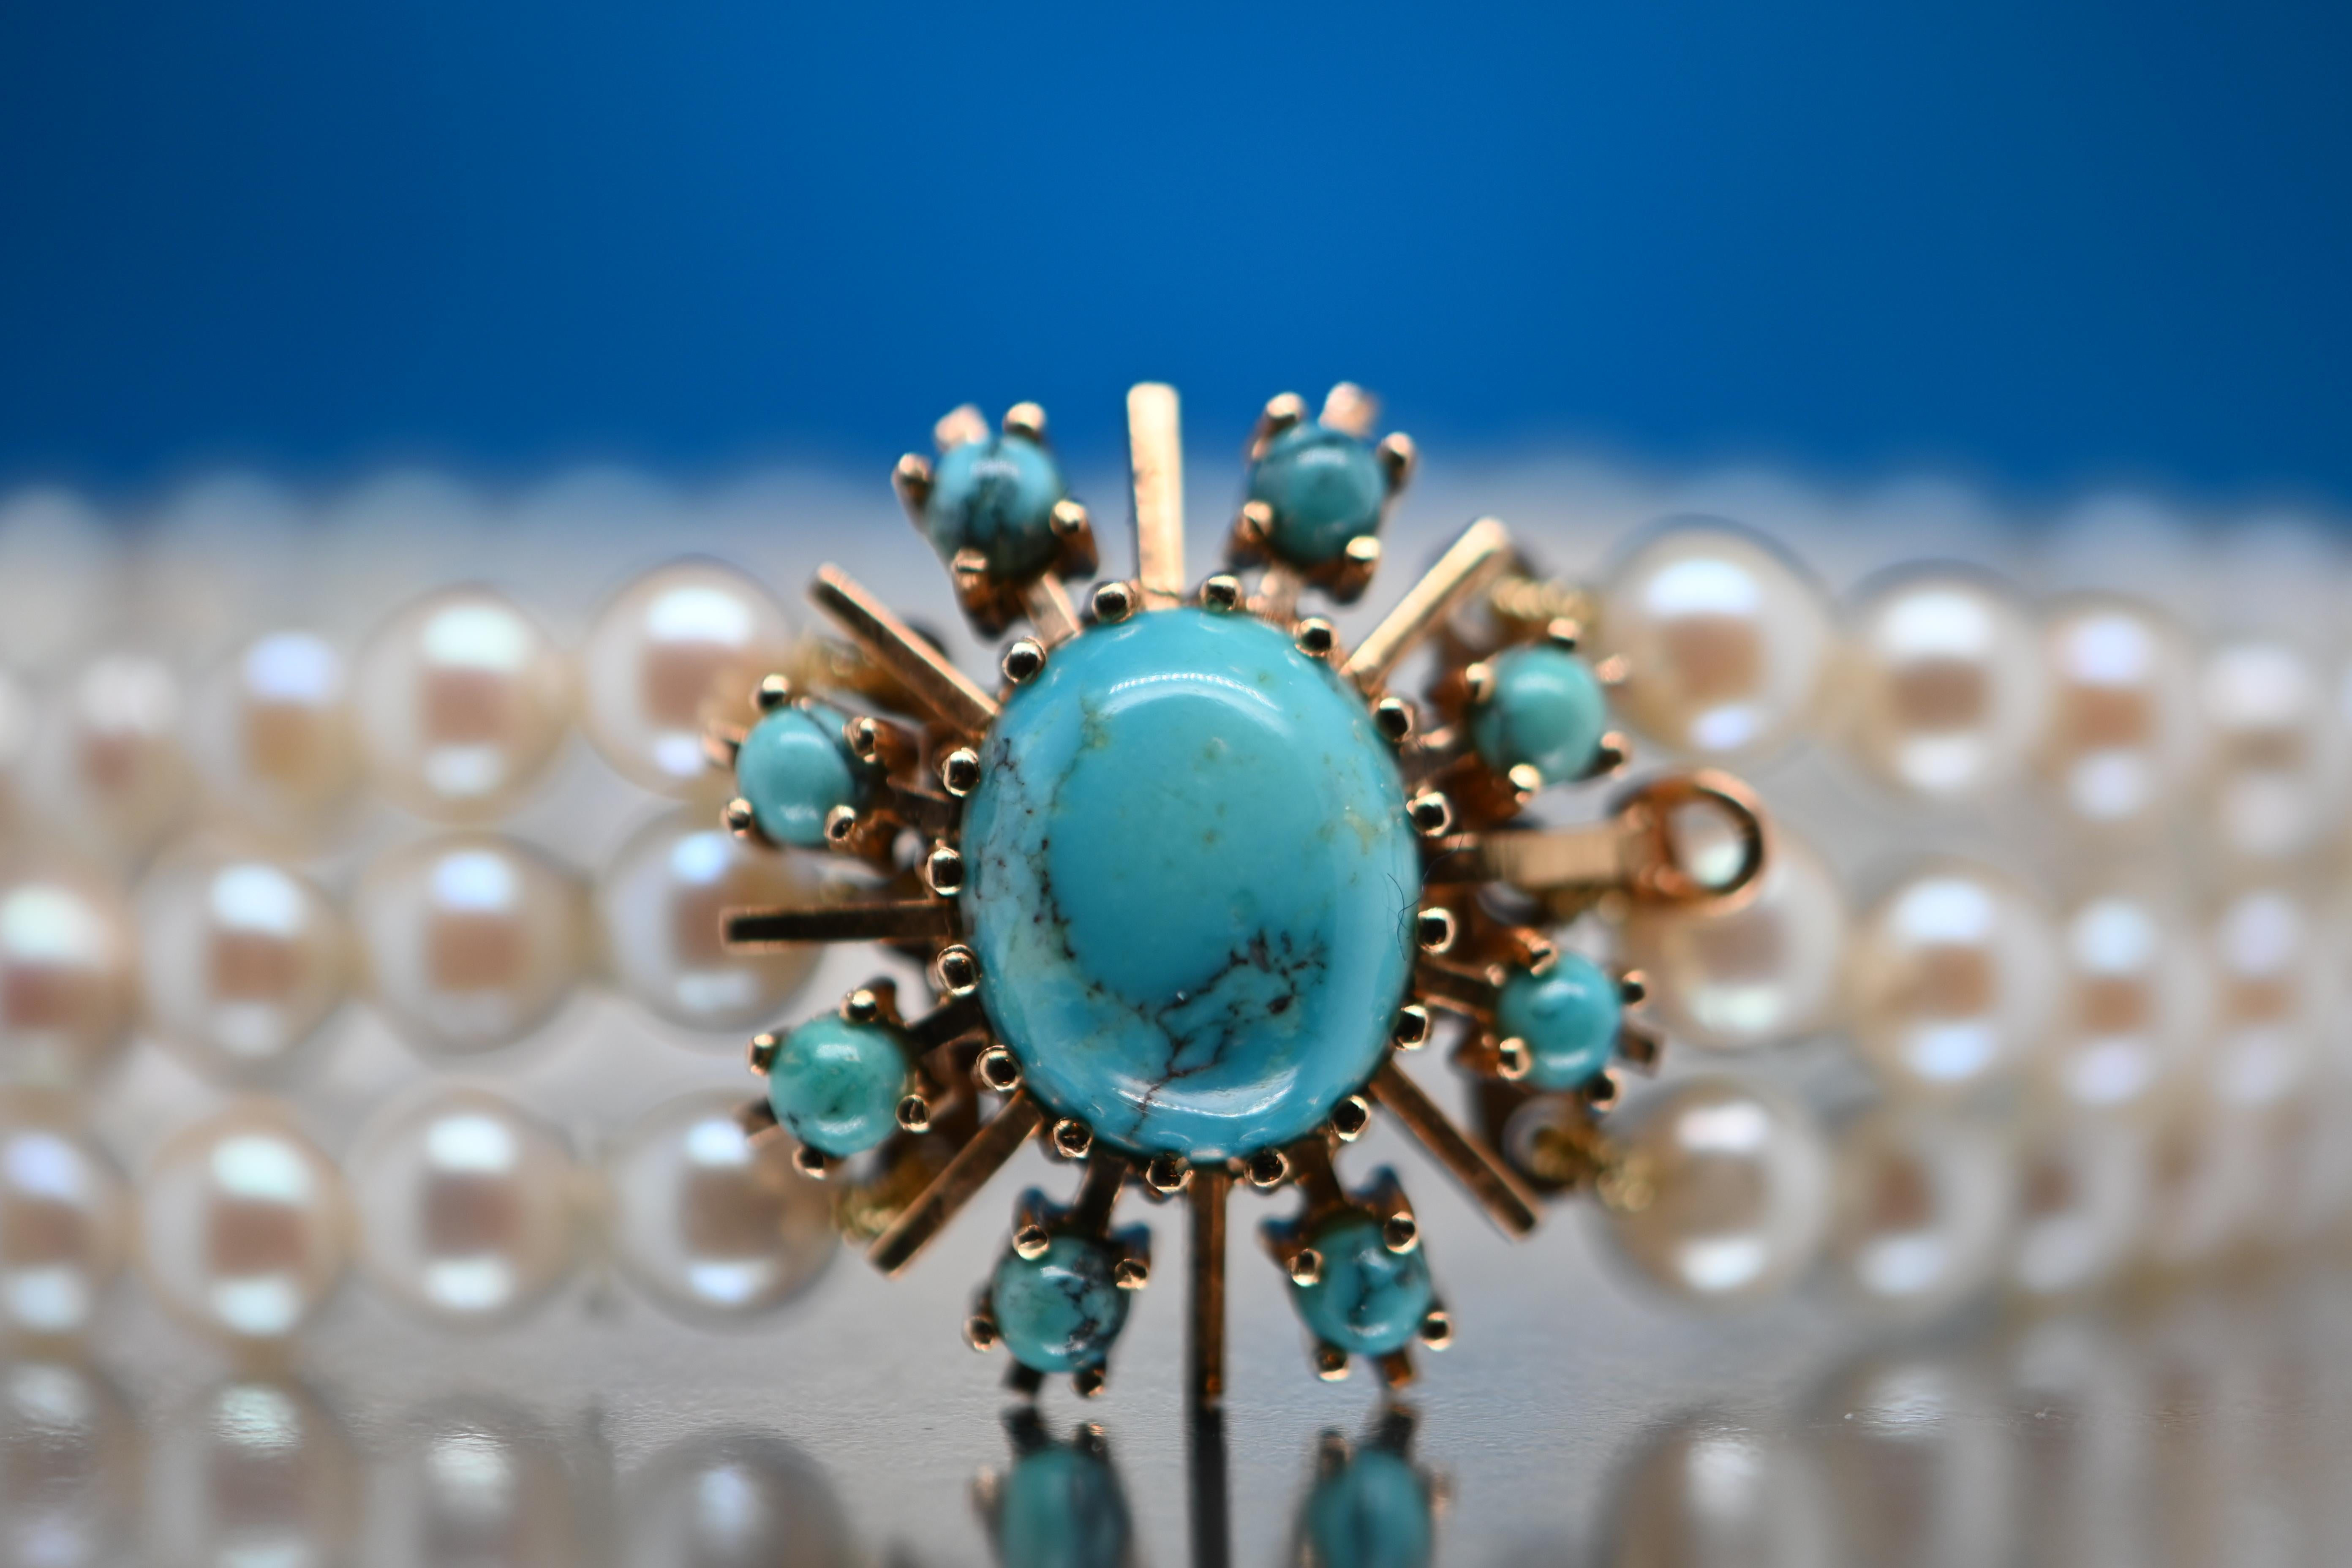 Composé de 9 perles de turquoise exquises et de 90 perles d'Akoya d'une qualité exceptionnelle, ce bracelet est un chef-d'œuvre unique qui ne manquera pas de captiver tous les regards. Chaque perle de Brilliante a été soigneusement sélectionnée pour